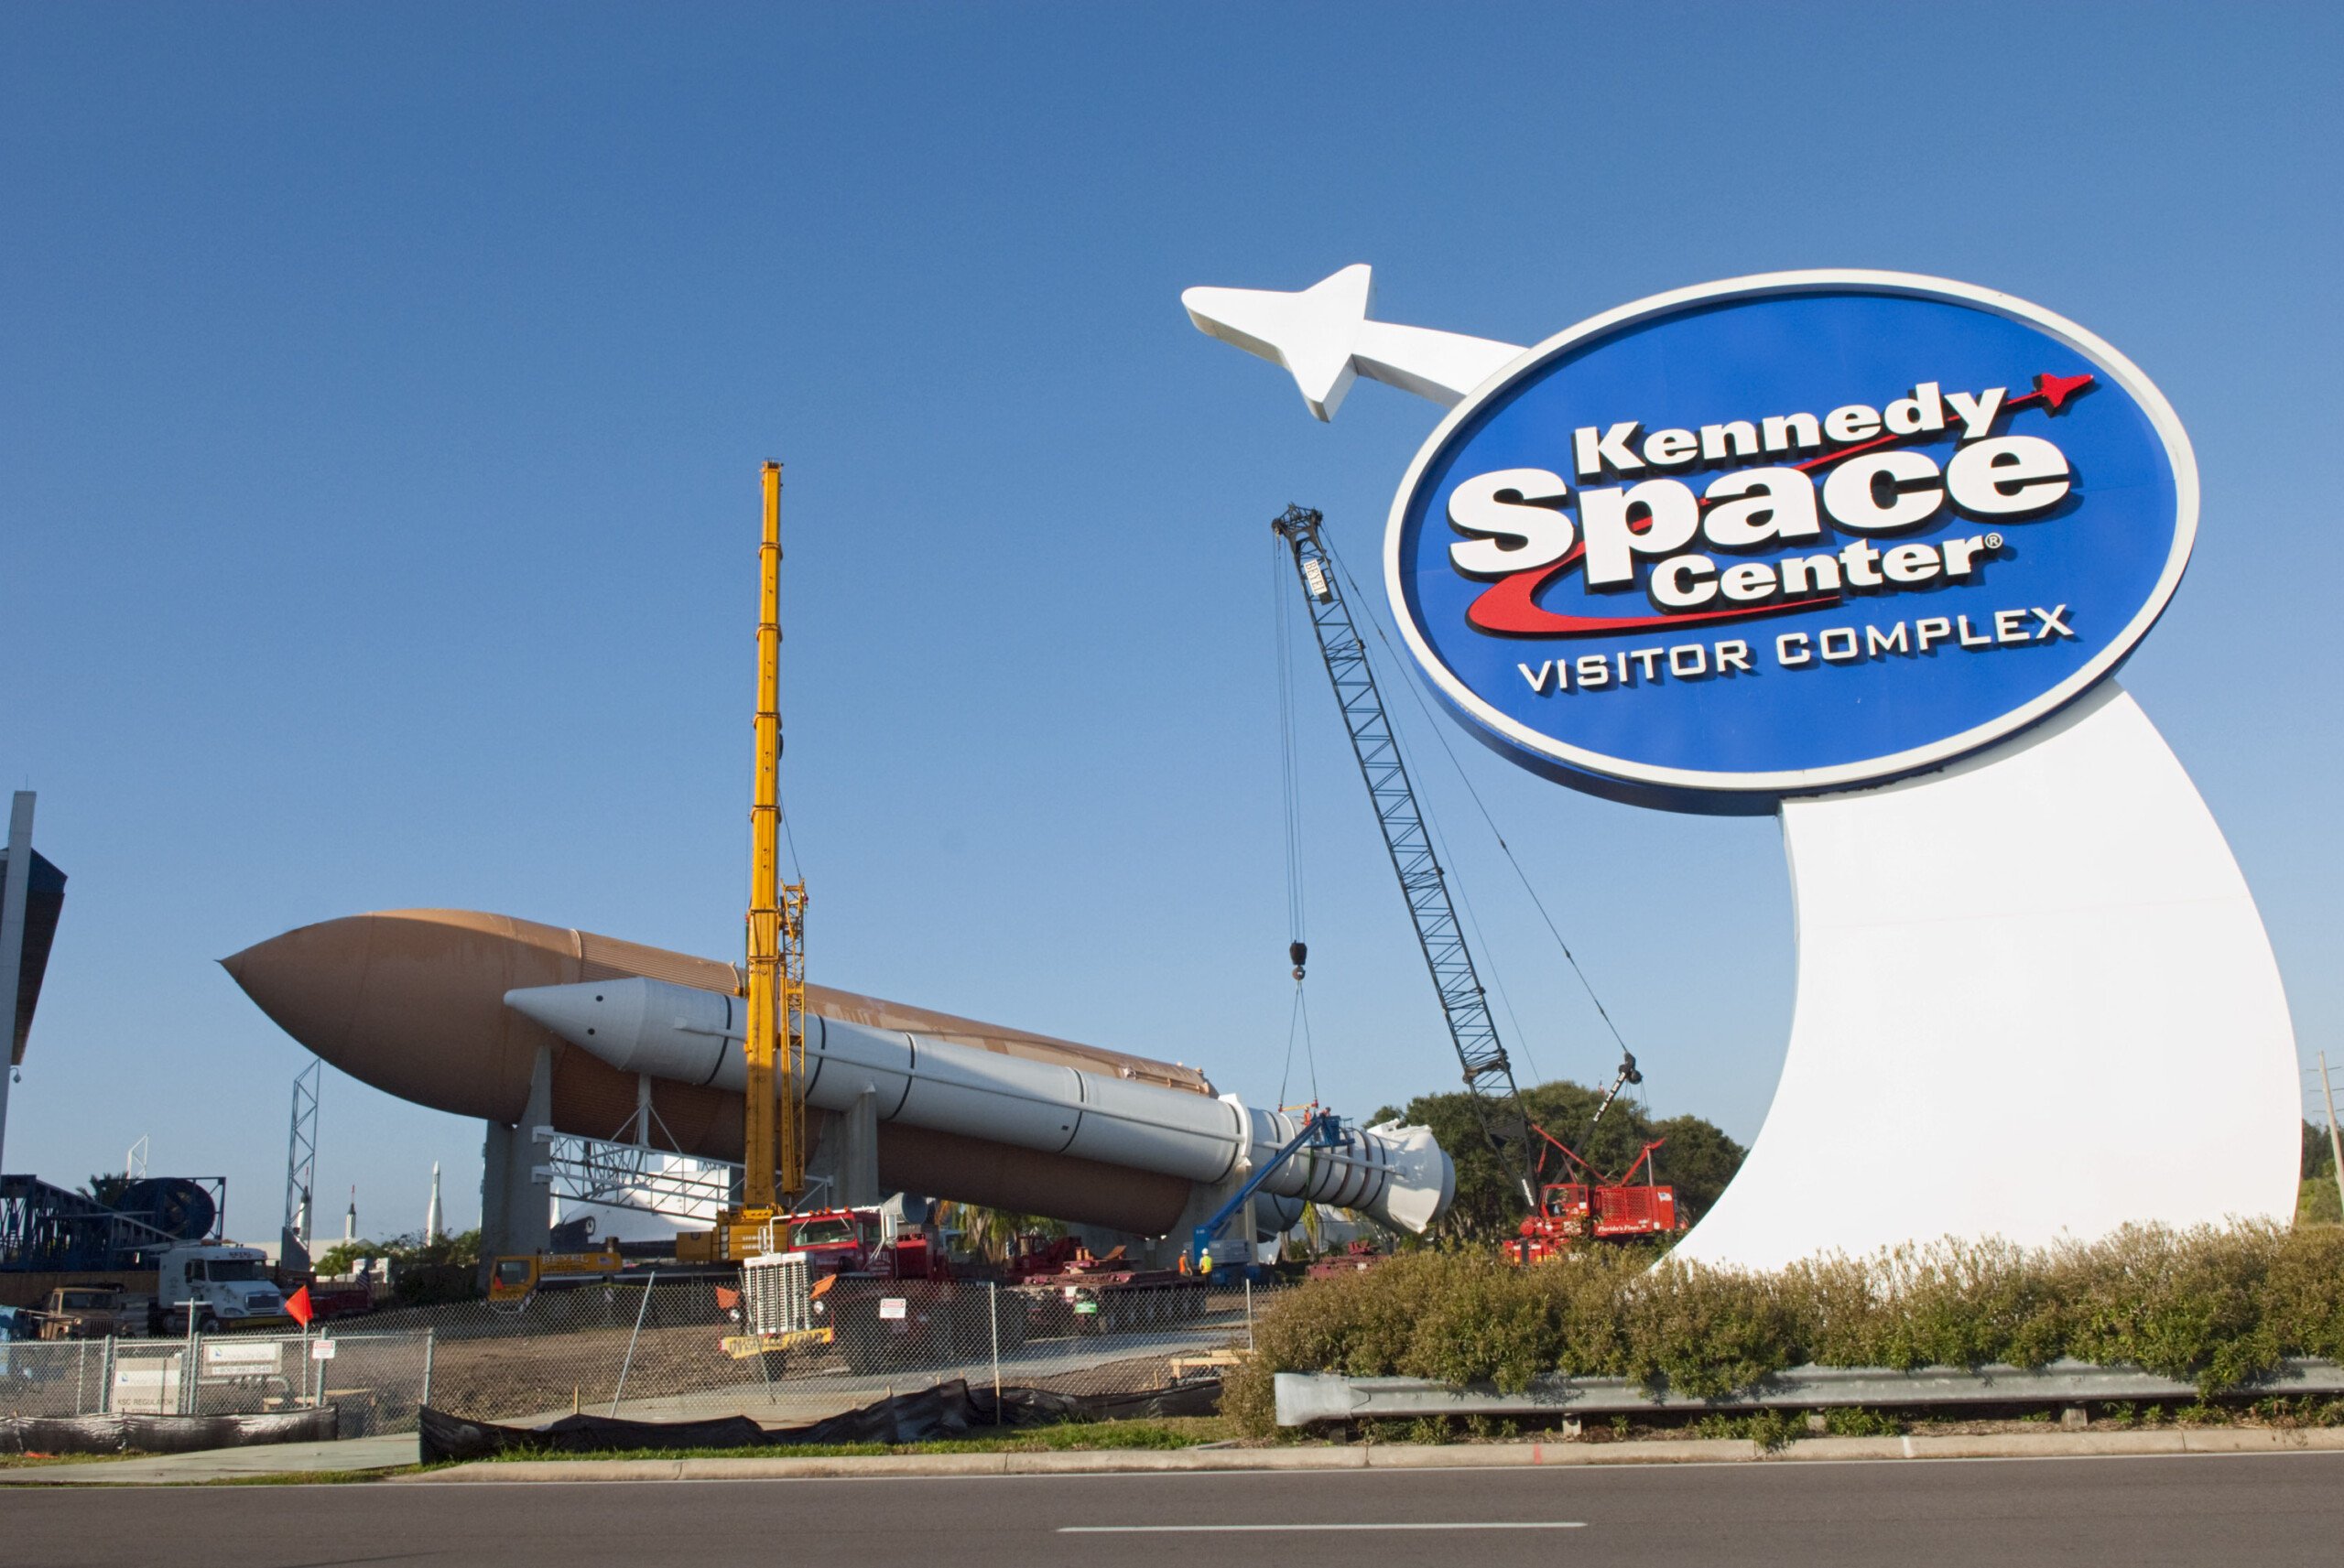 Visite o Kennedy Space Center: 5 dicas para um tour inesquecível | Monumento com o logo do Kennedy Space Center no Cabo Canaveral na Flórida | Conexão123